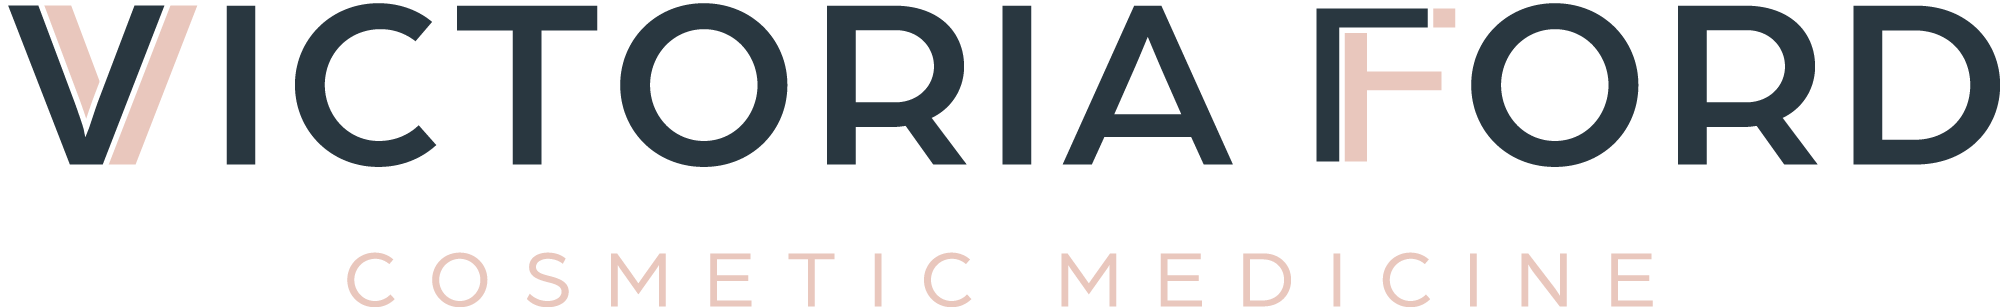 Victoria Ford Cosmetic Medicine Logo